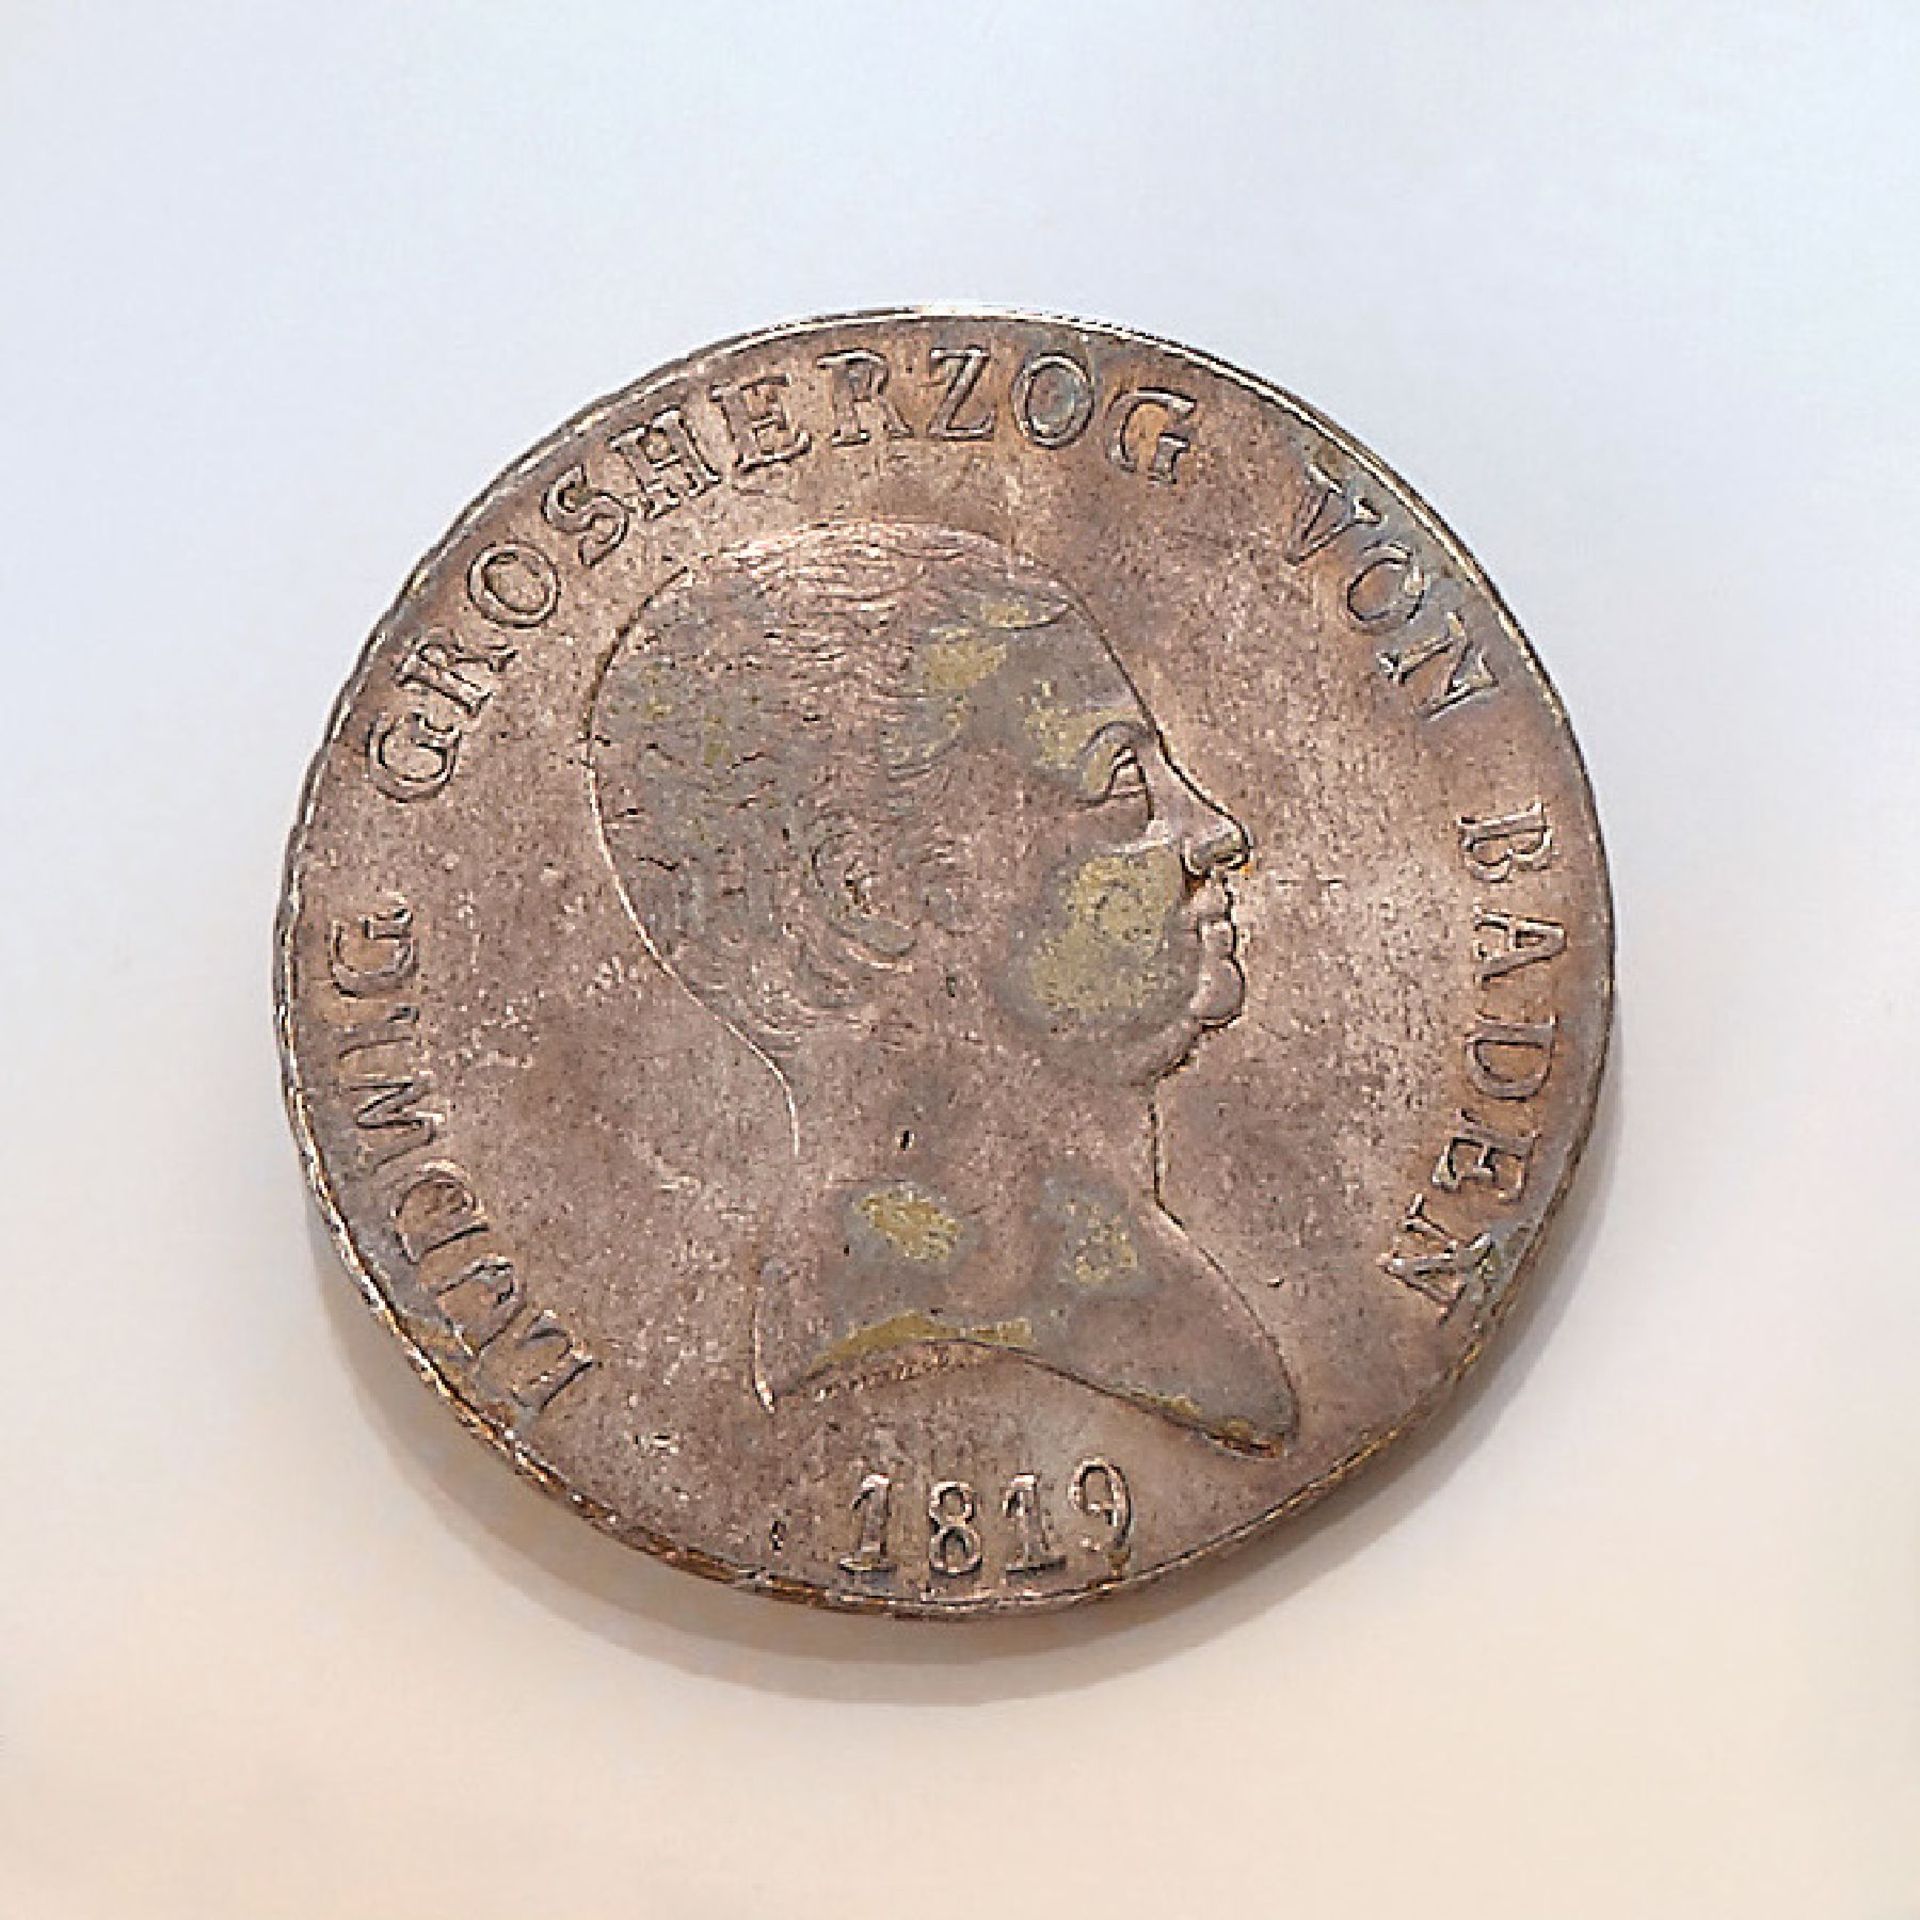 Silver coin, 1 kroner-Thaler, Baden, 1819, Ludwig grand duke of Baden